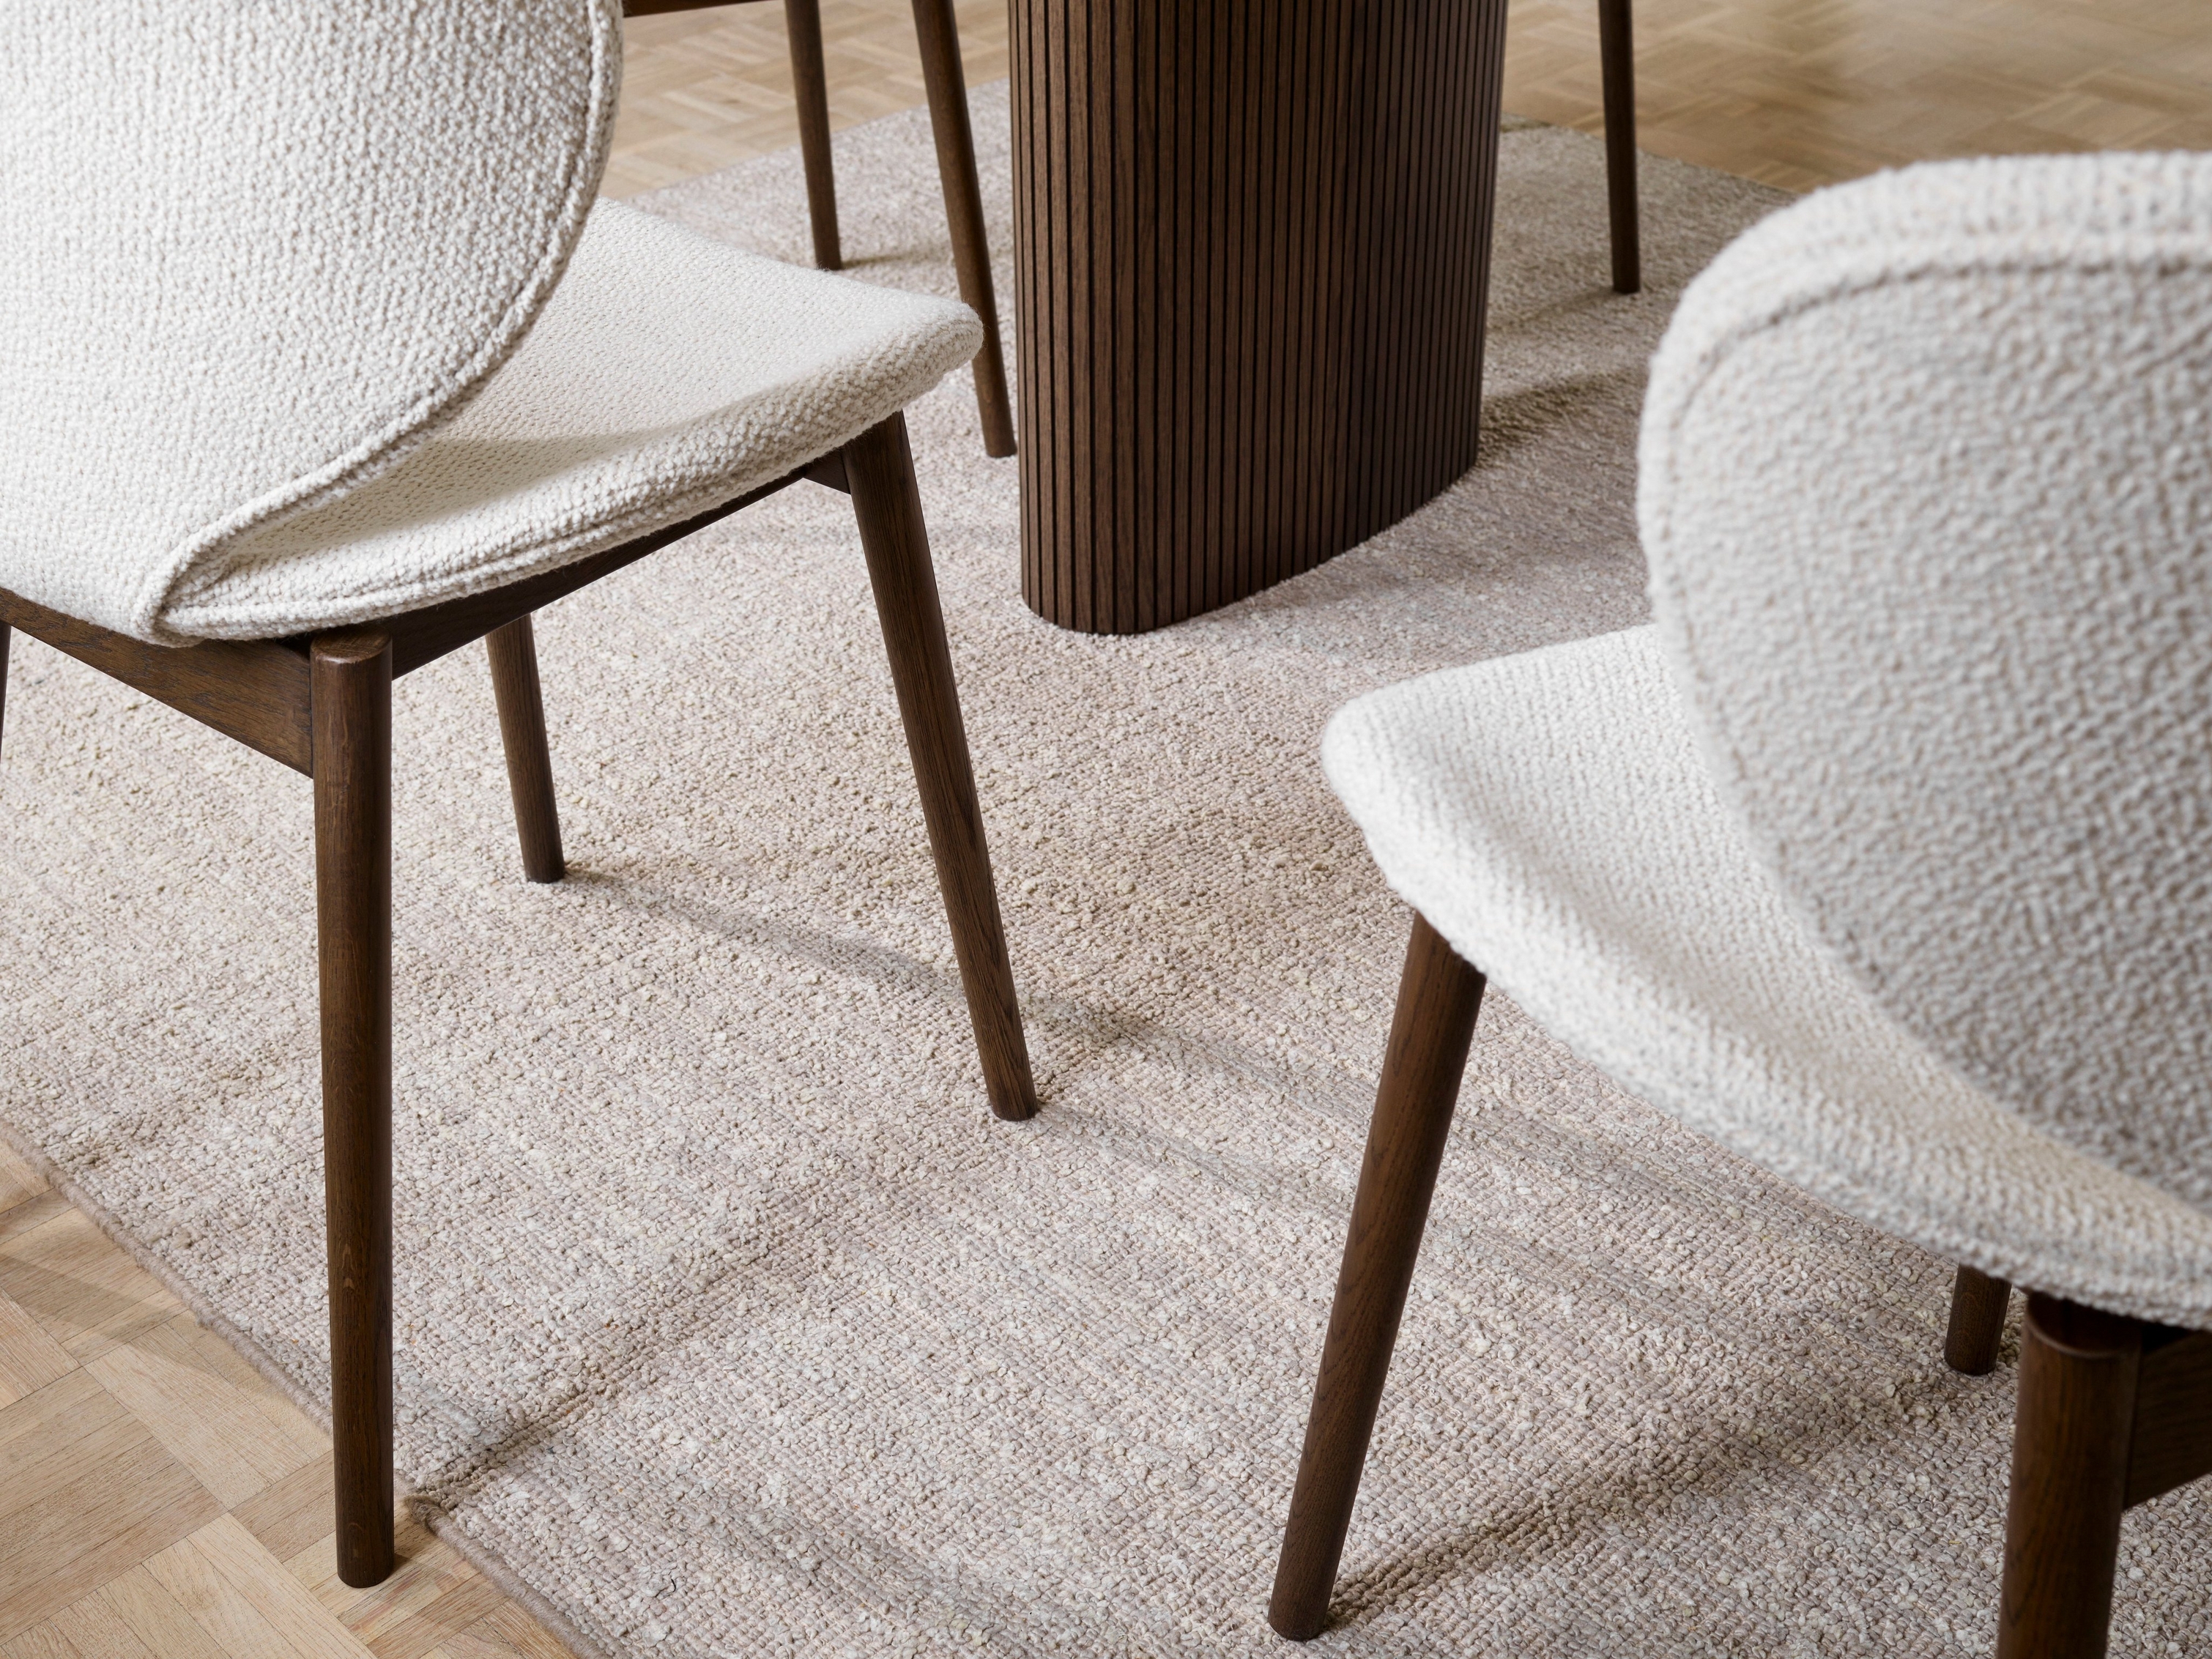 Texturált Hamilton székek és szőnyeg faasztallal, középpontban a padló részleteivel.